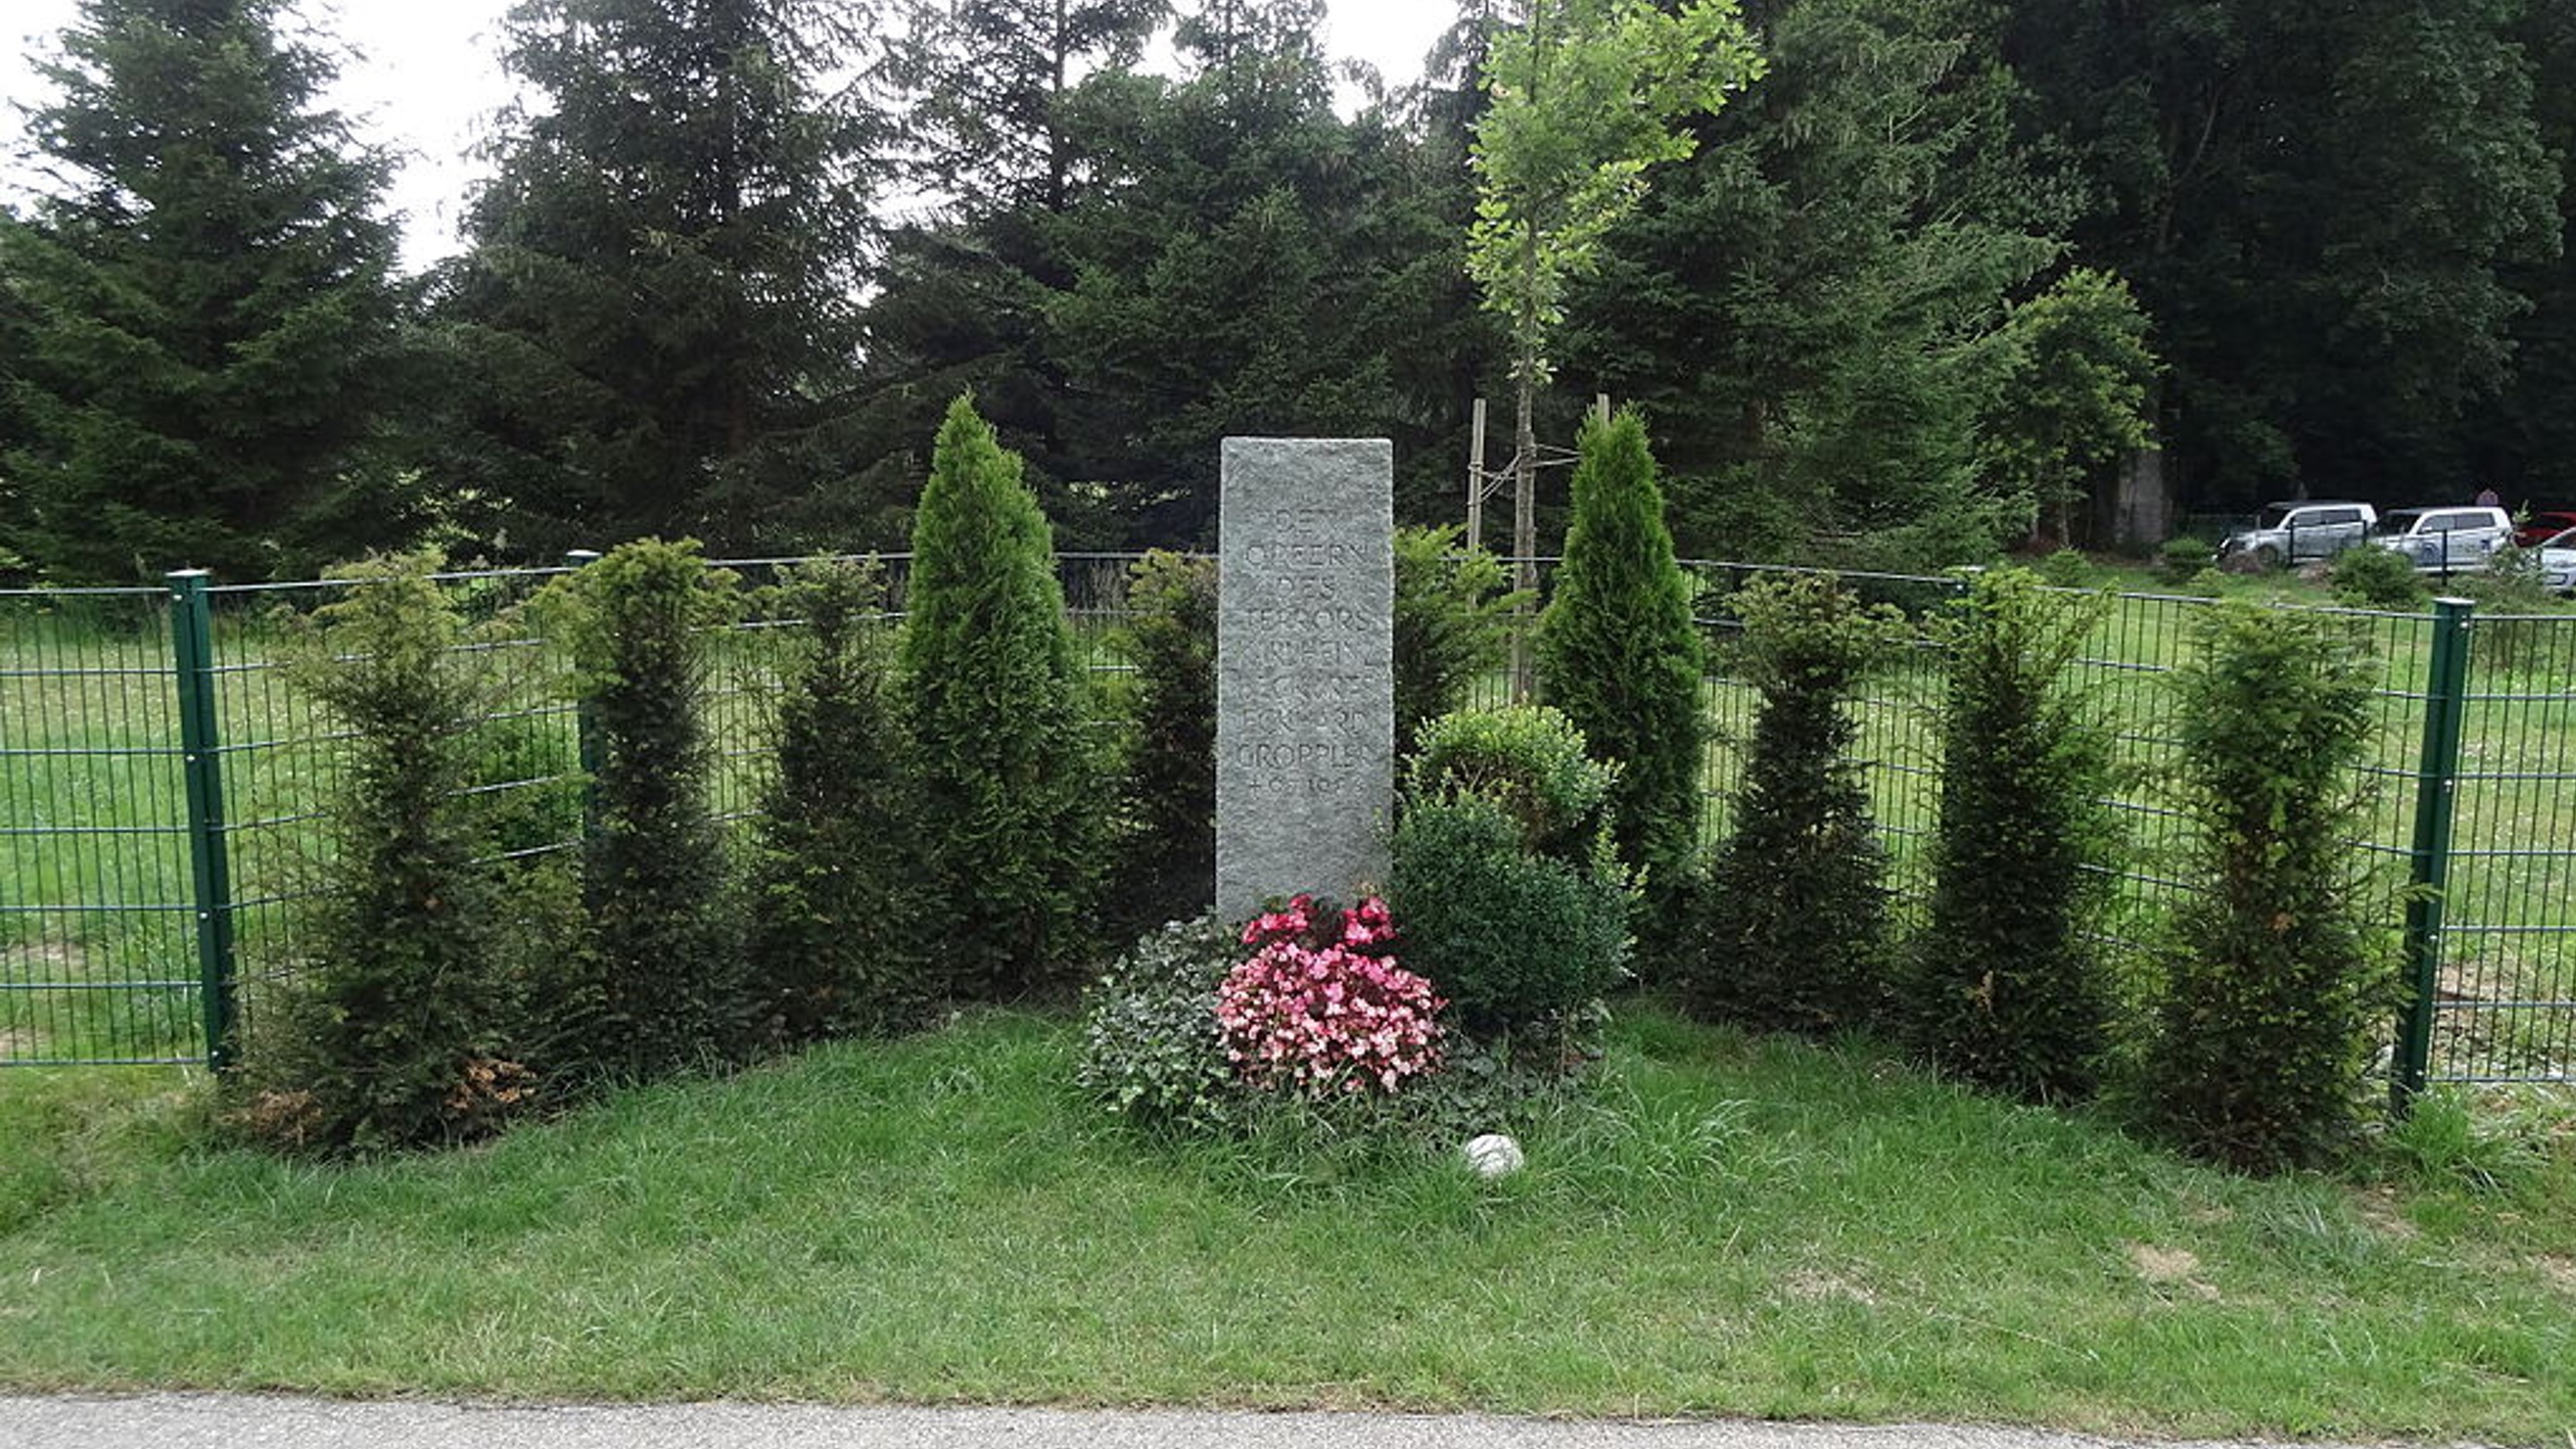 Karl Heinz Beckurts emlékműve a merénylet helyszínén